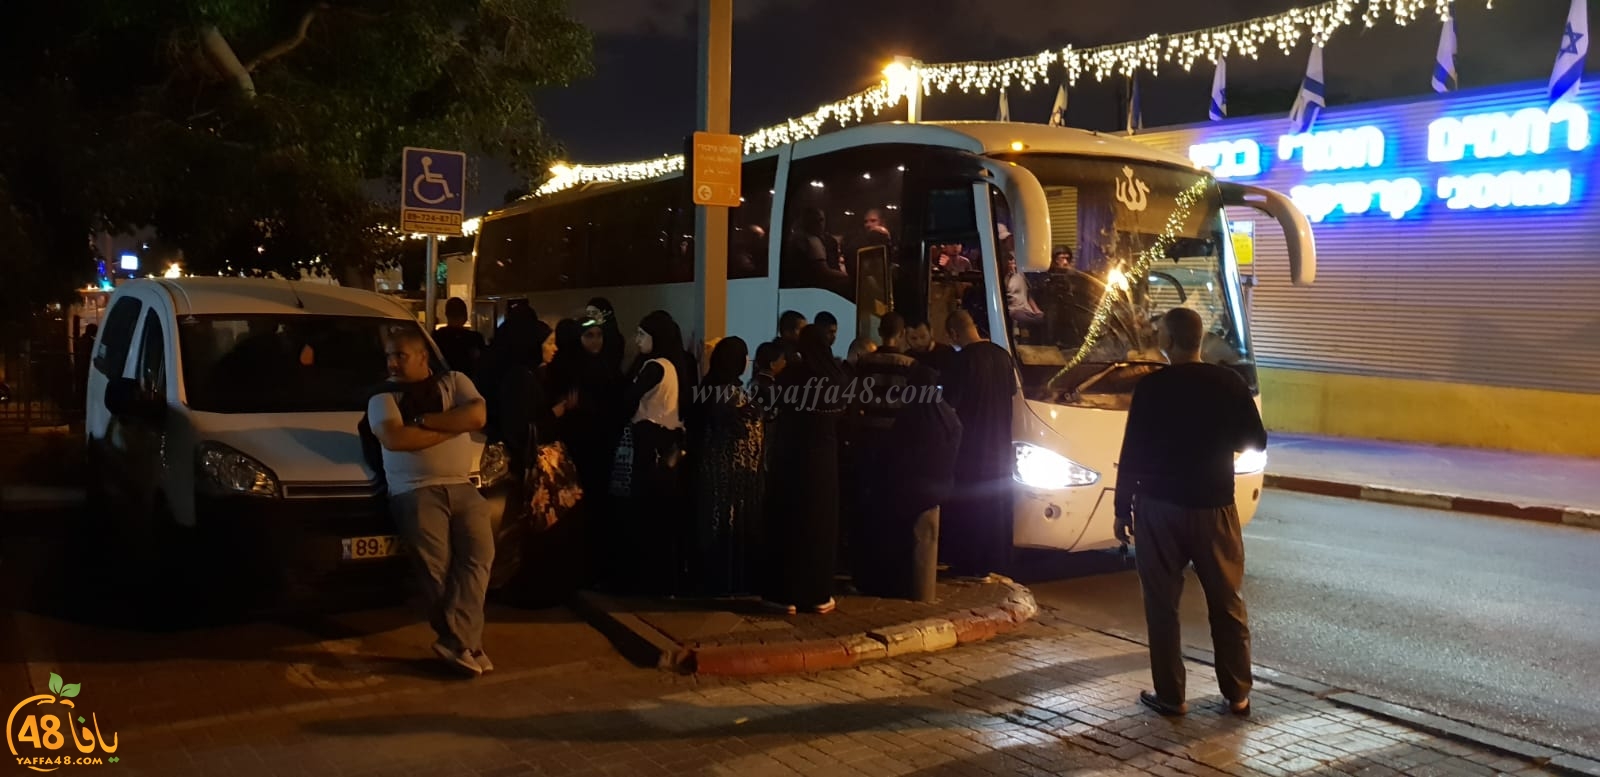  صور: 3 حافلات من مدينة يافا تشد الرحال الى المسجد الأقصى المبارك لأداء صلاة الفجر